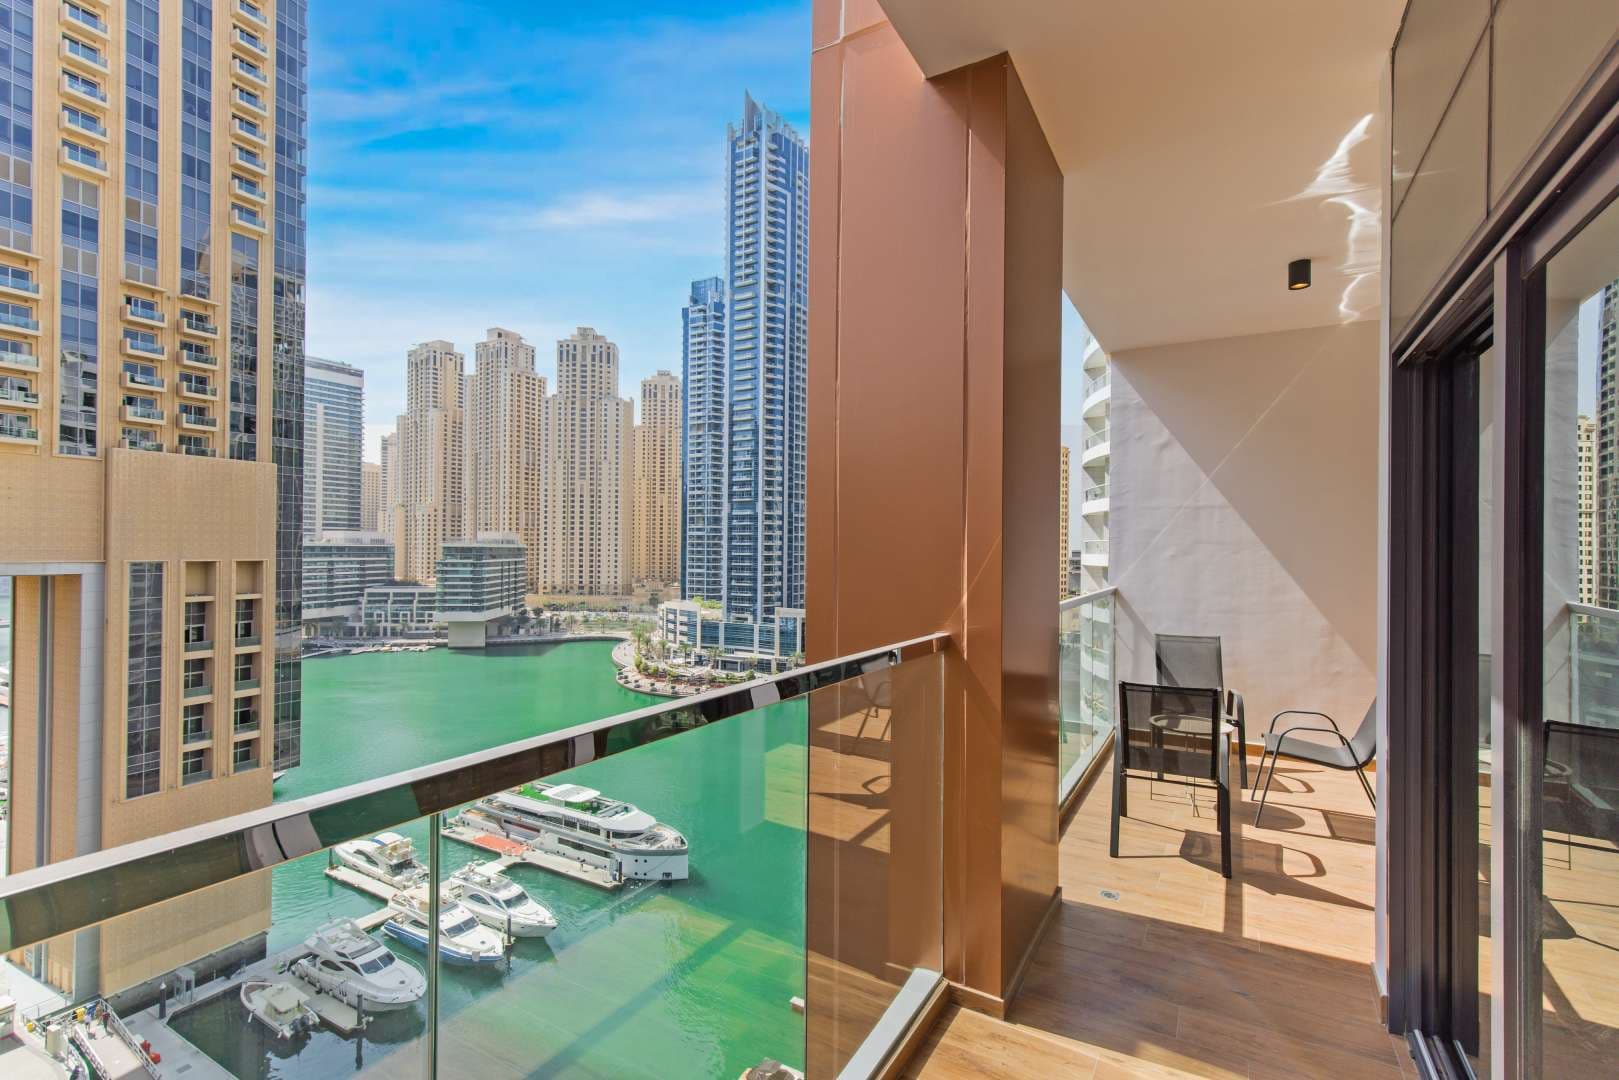 2 Bedroom Apartment For Rent Dubai Marina Moon Lp11718 2d3b86eccb05e600.jpg